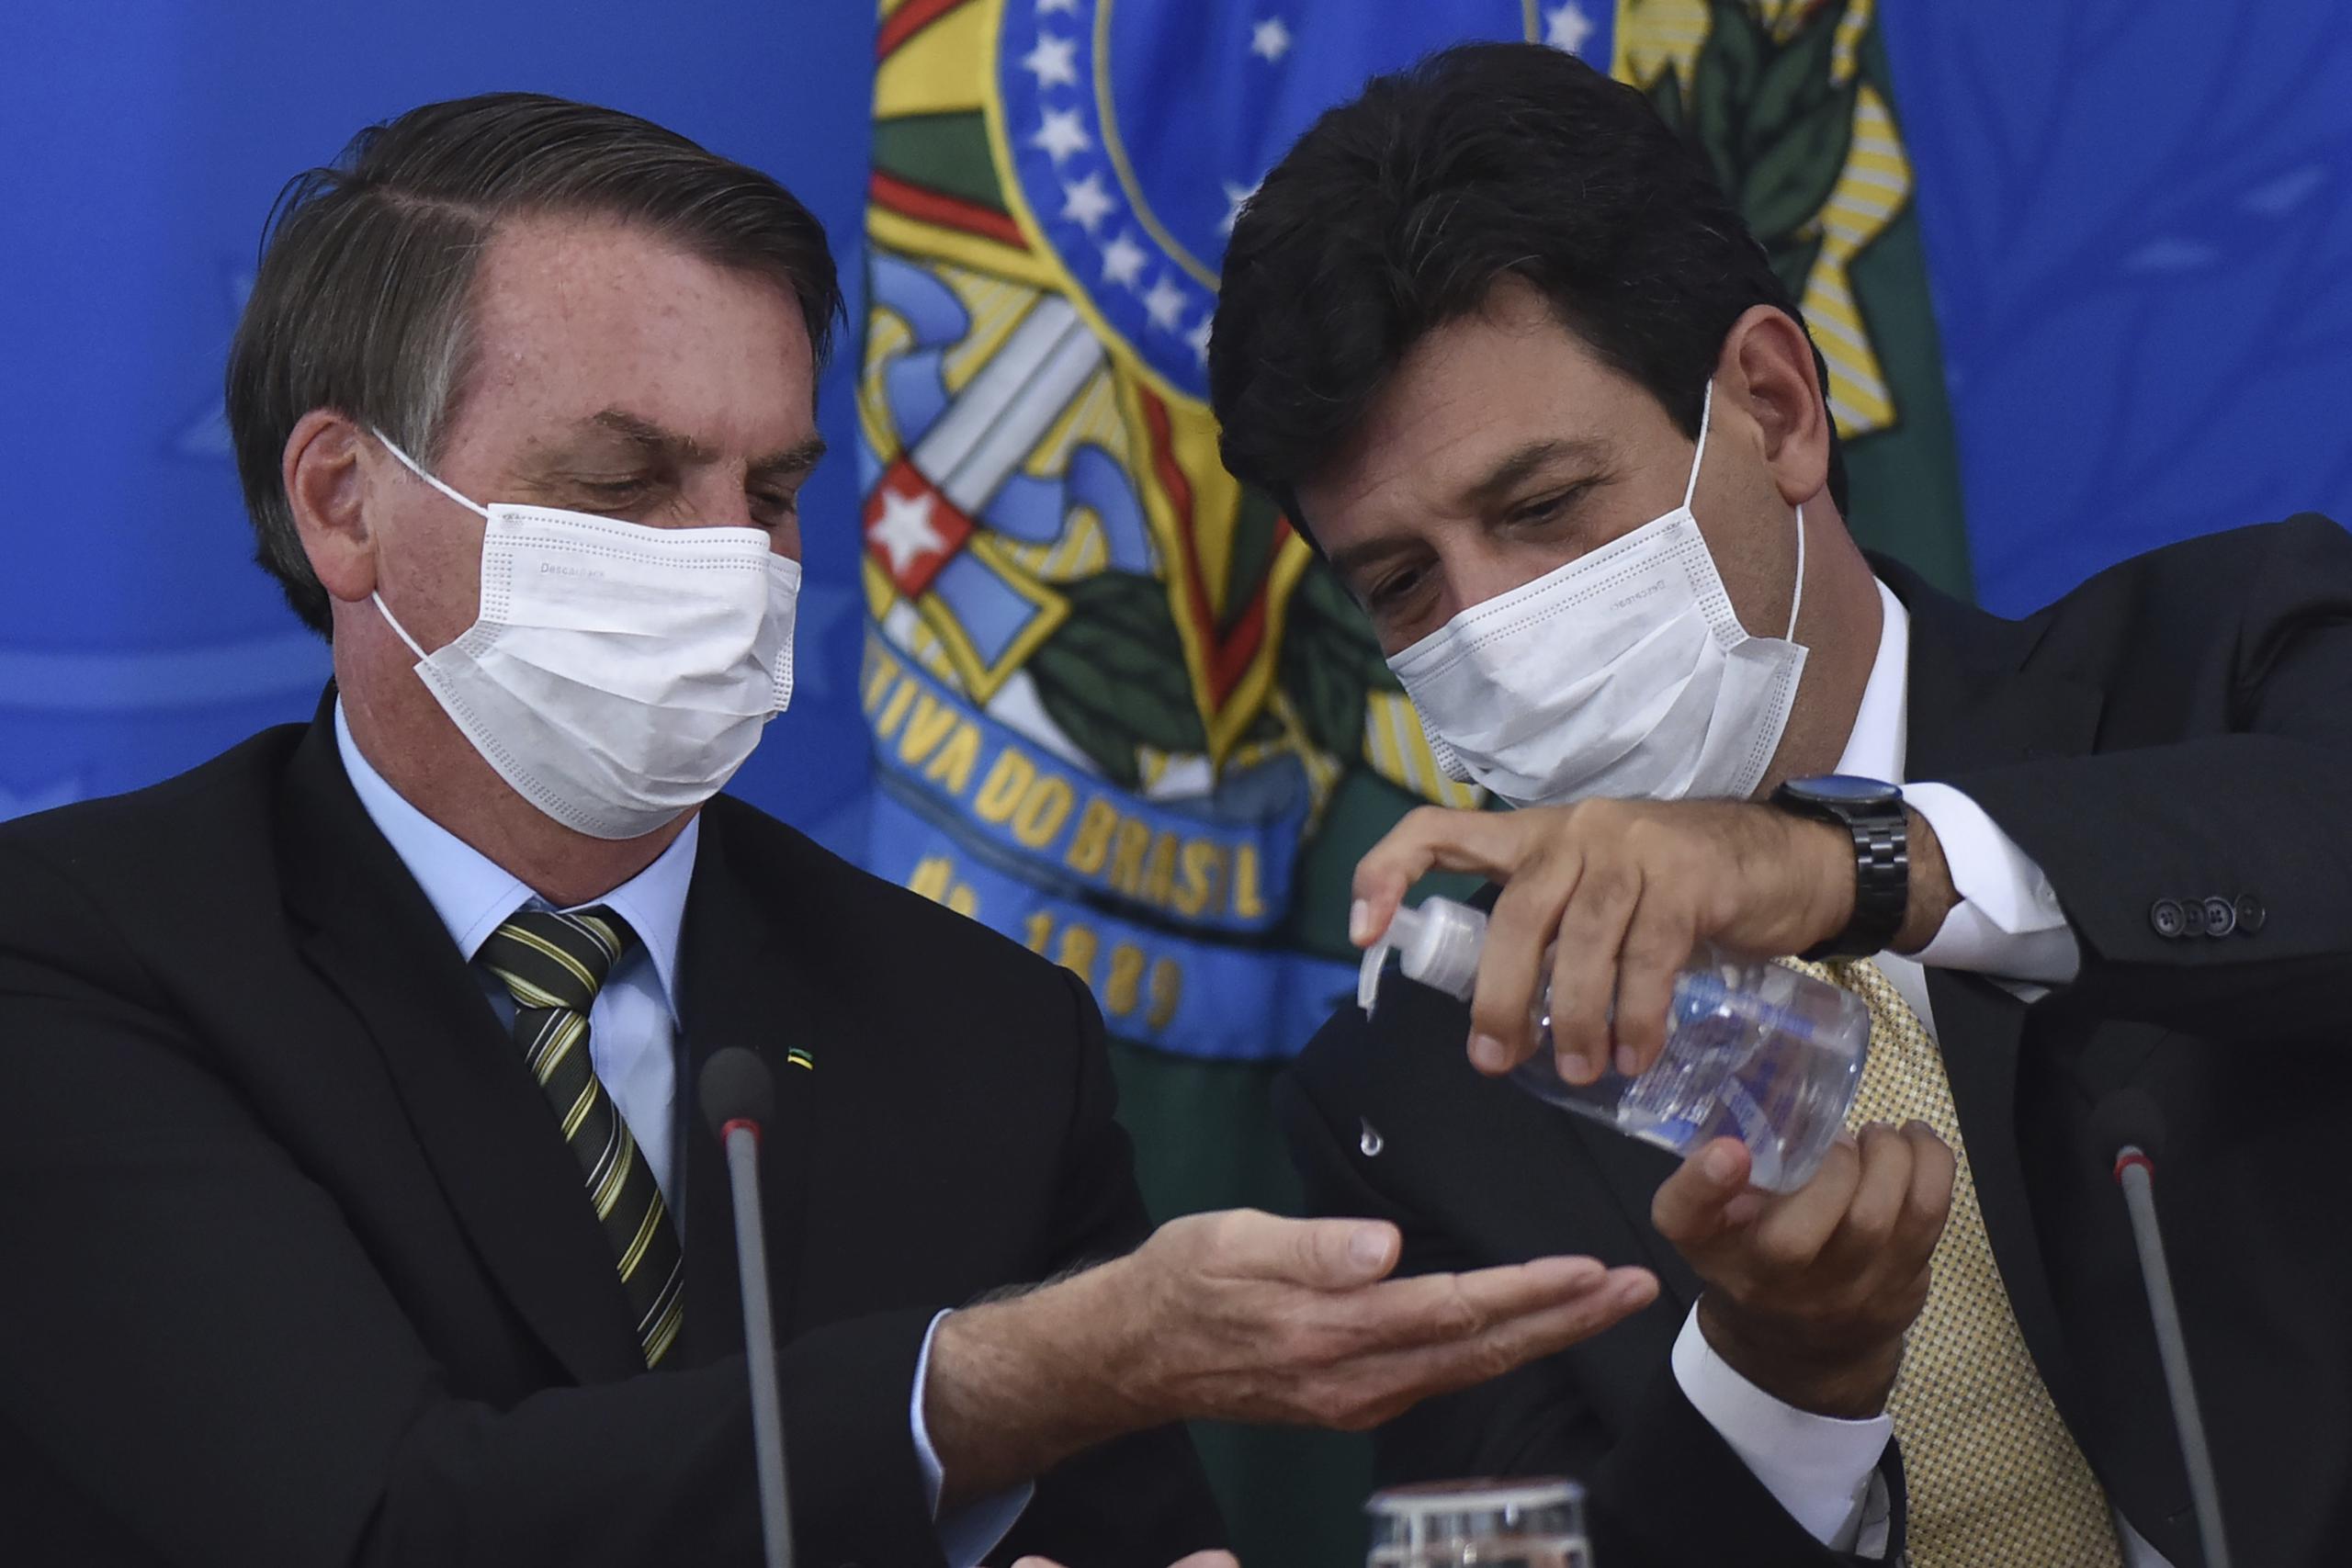 El ministro de salud de Brasil Luiz Henrique Mandetta, derecha, aplica desinfectante en las manos al presidente Jair Bolsonaro durante una conferencia de prensa en el Palacio Presidencial de Planalto en Brasilia